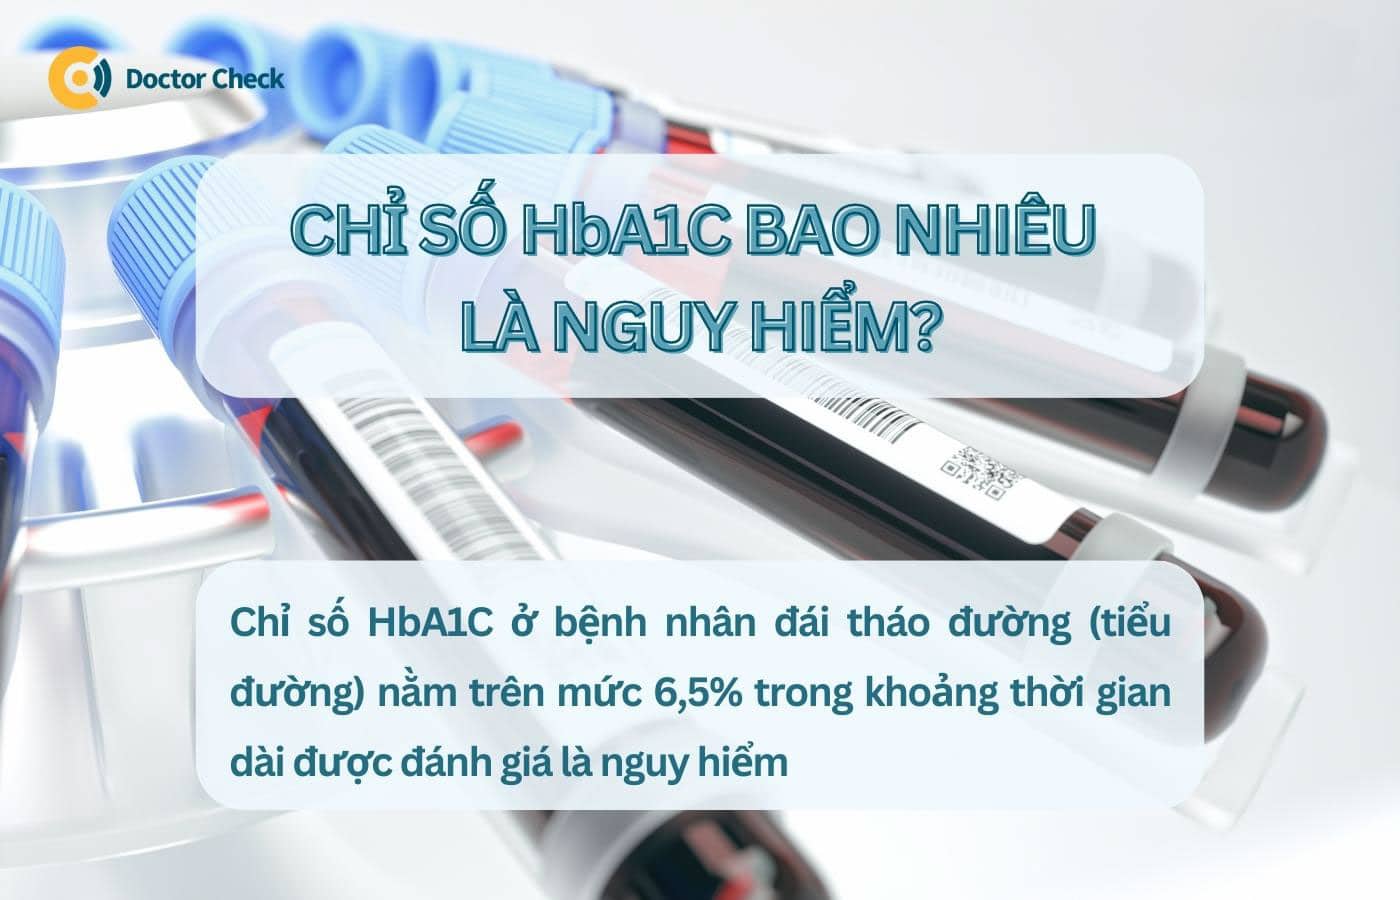 Chỉ số HbA1C bao nhiêu là nguy hiểm?